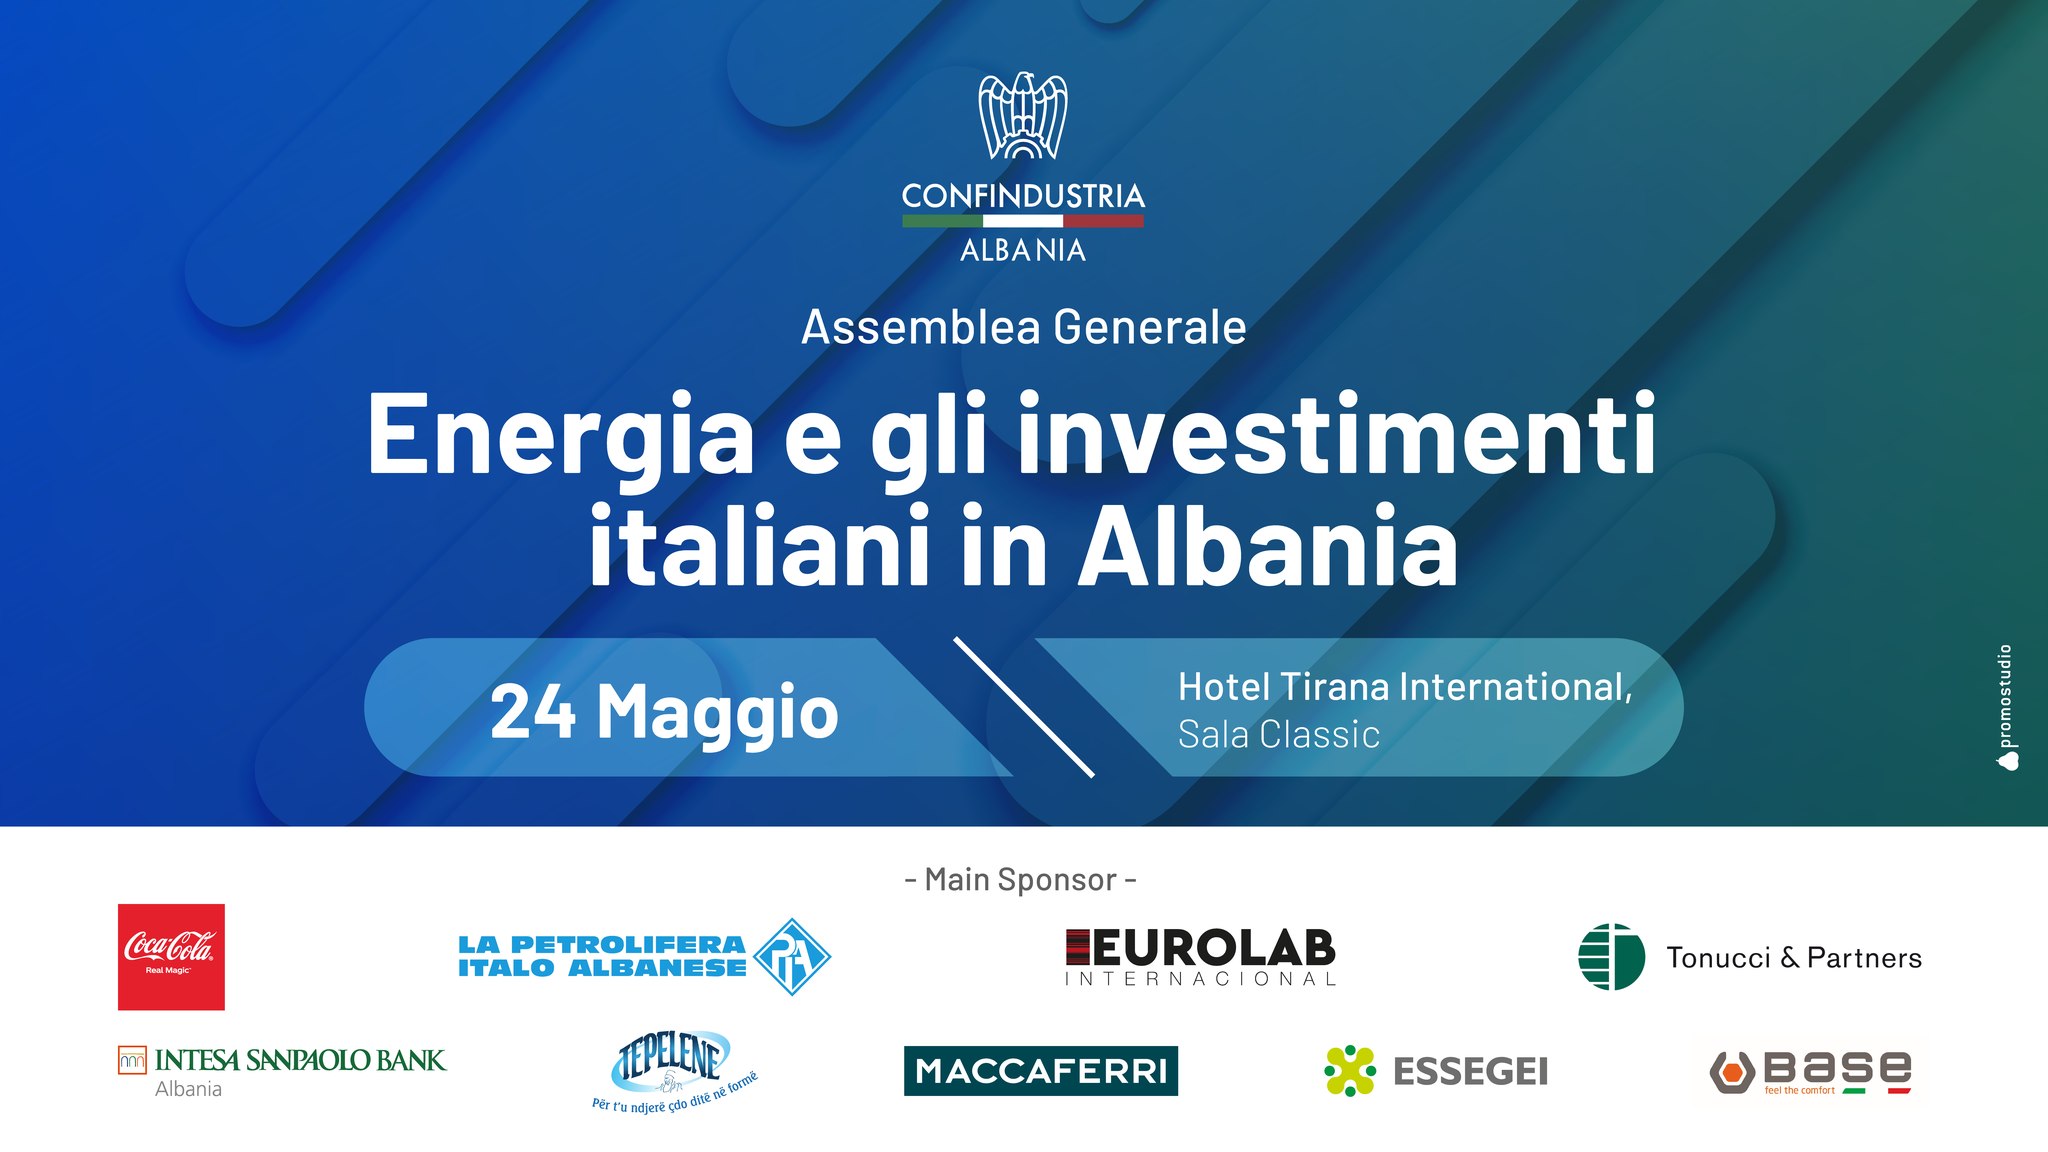 Assemblea Generale - “L'ENERGIA E GLI INVESTIMENTI ITALIANI IN ALBANIA”